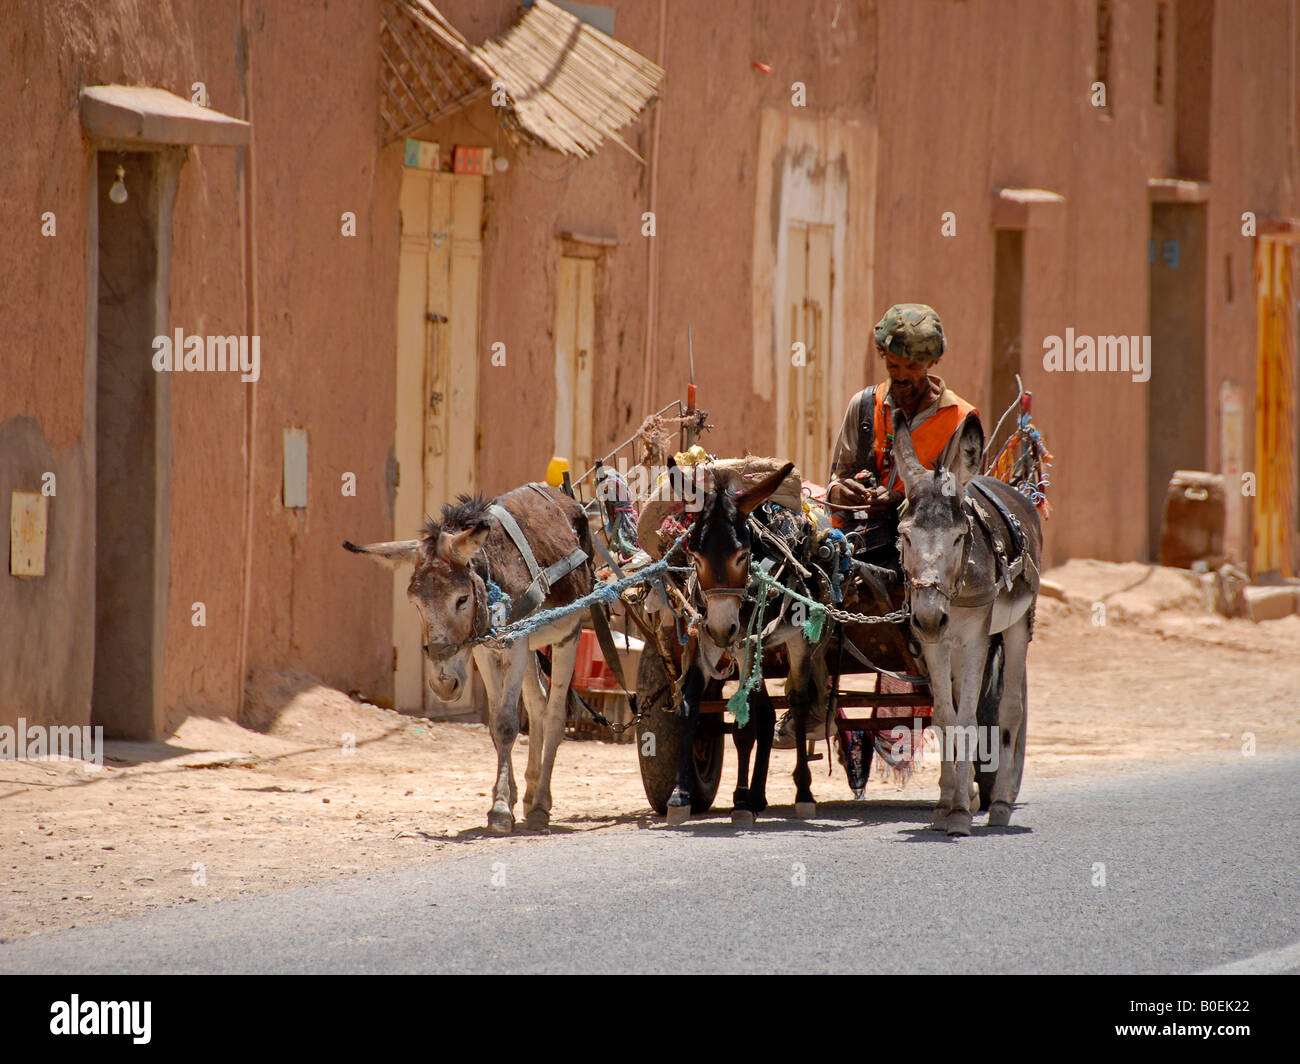 Streetlife in Marokko (1) Stockfoto